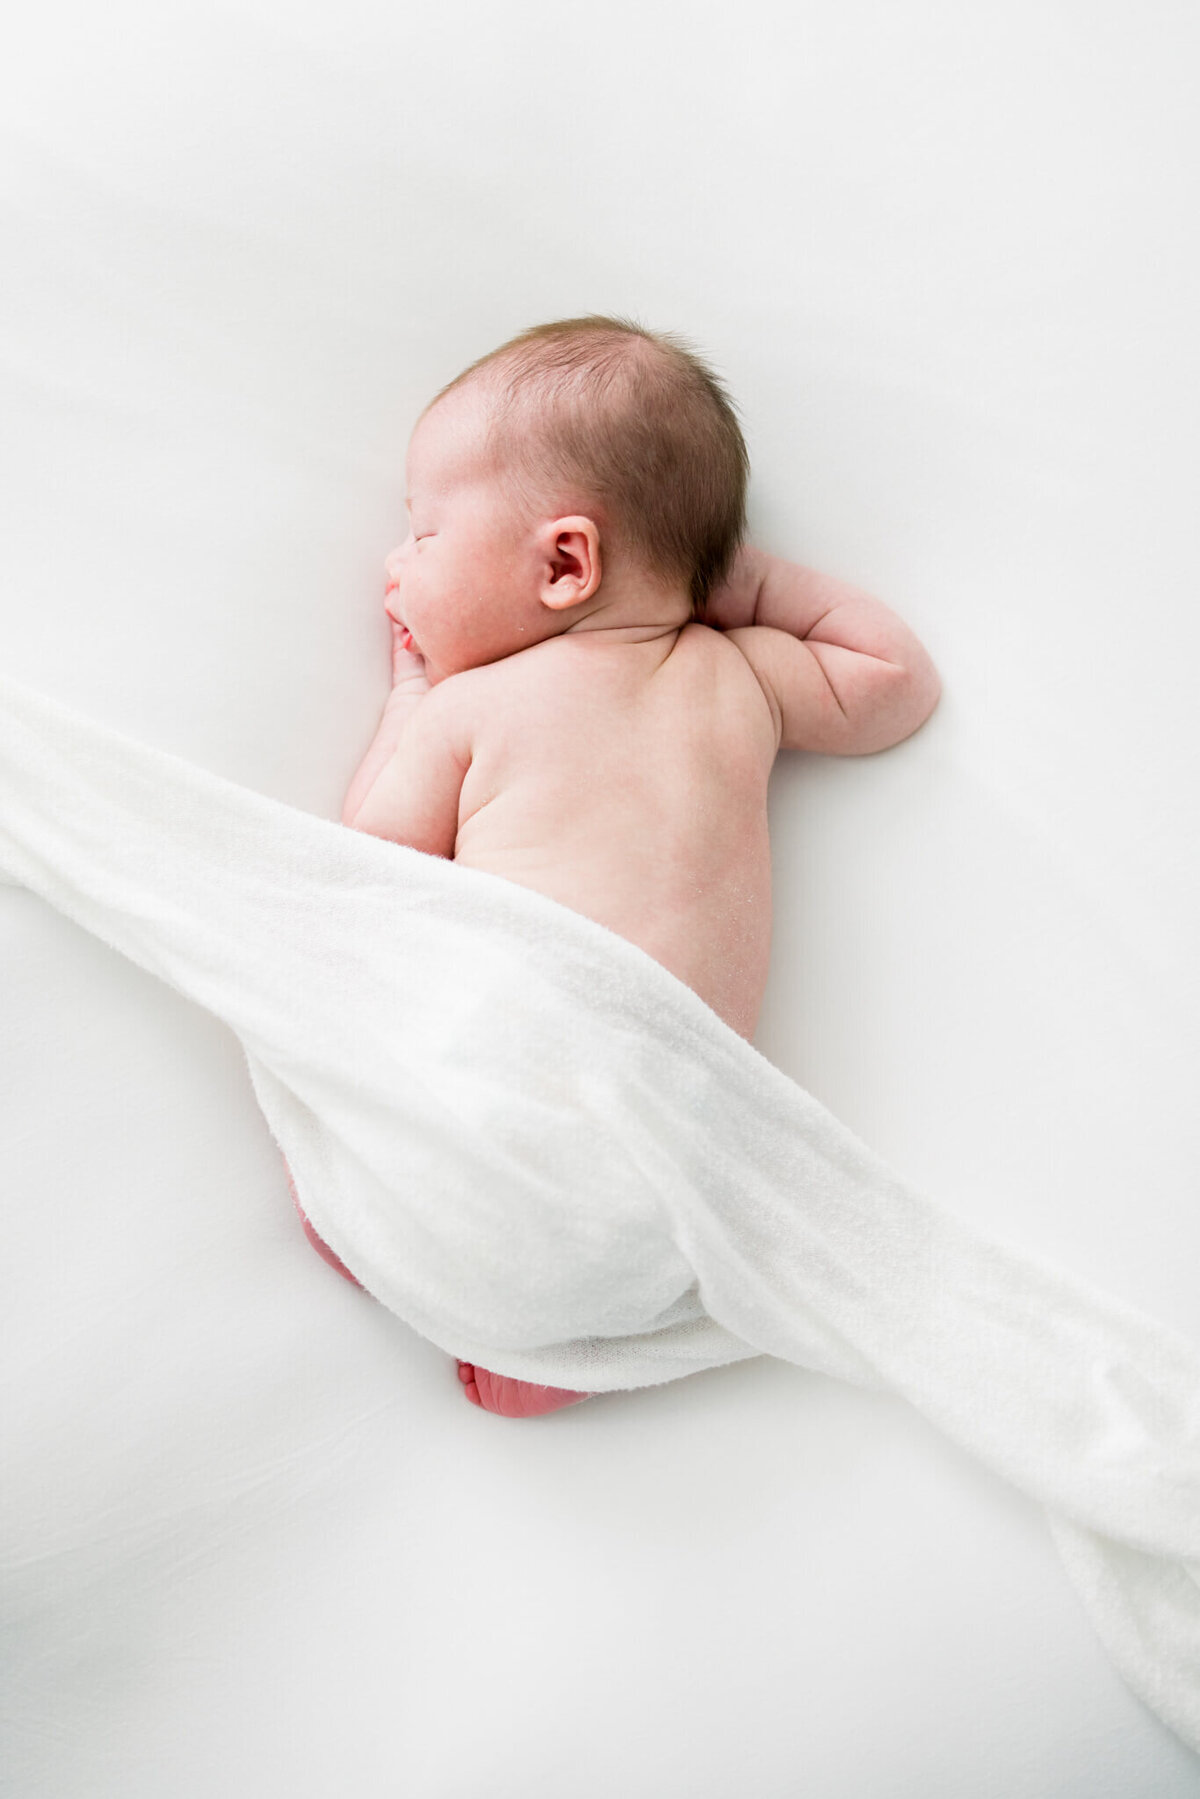 Sarasota-newborn-Photography-91